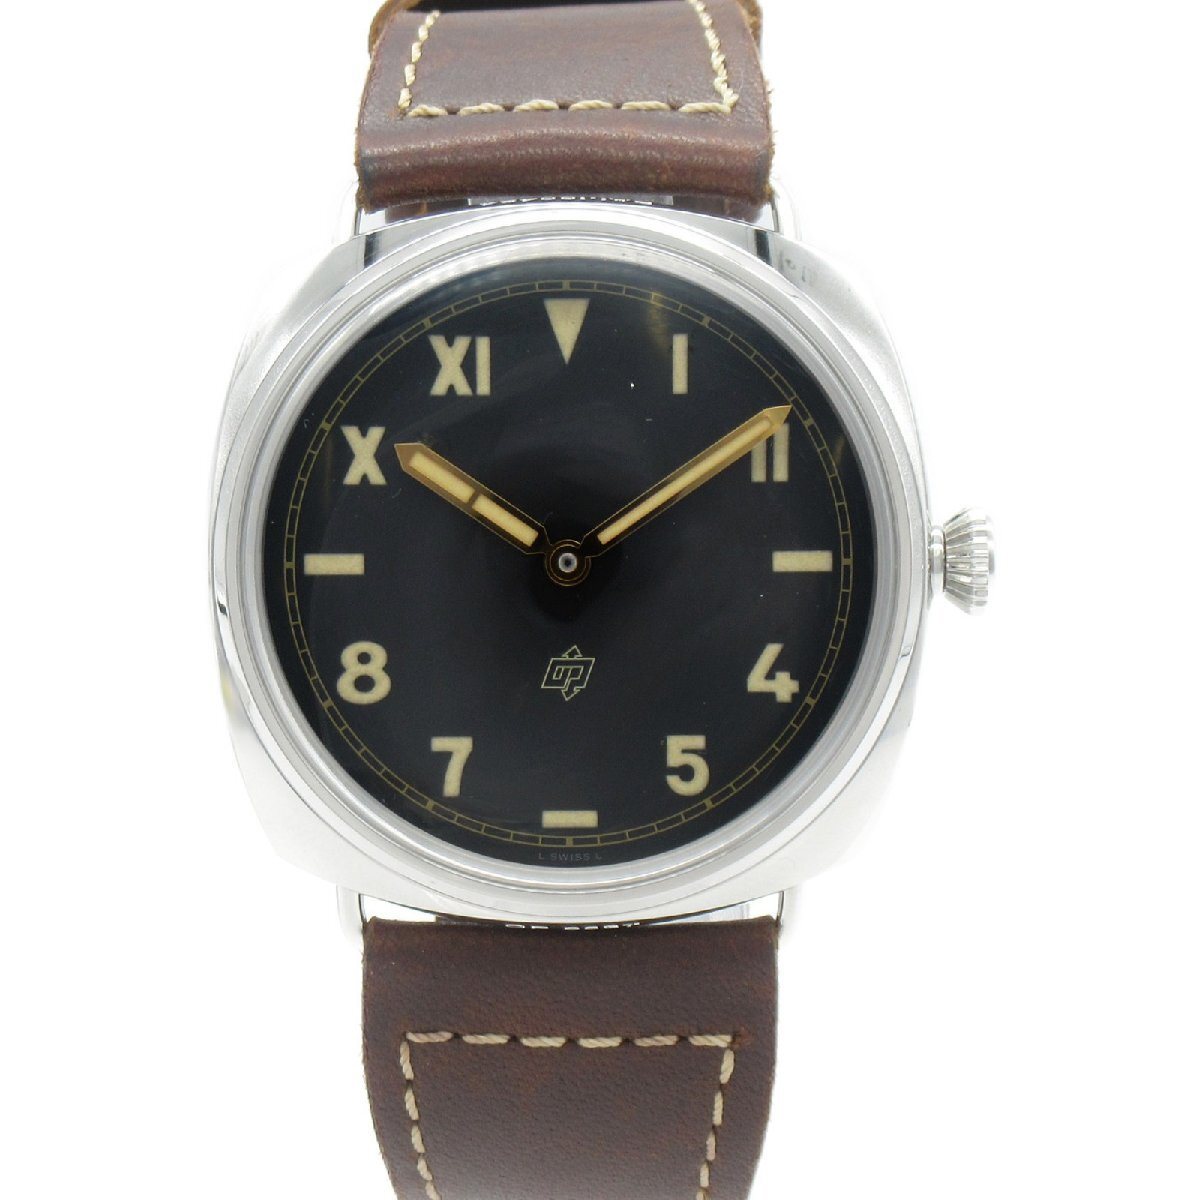 PANERAI パネライ 腕時計 ラジオミール カリフォルニア 3デイズ 腕時計 ウォッチ ブラック系 ステンレススチール レザーベルト 中古 メンズ_画像1